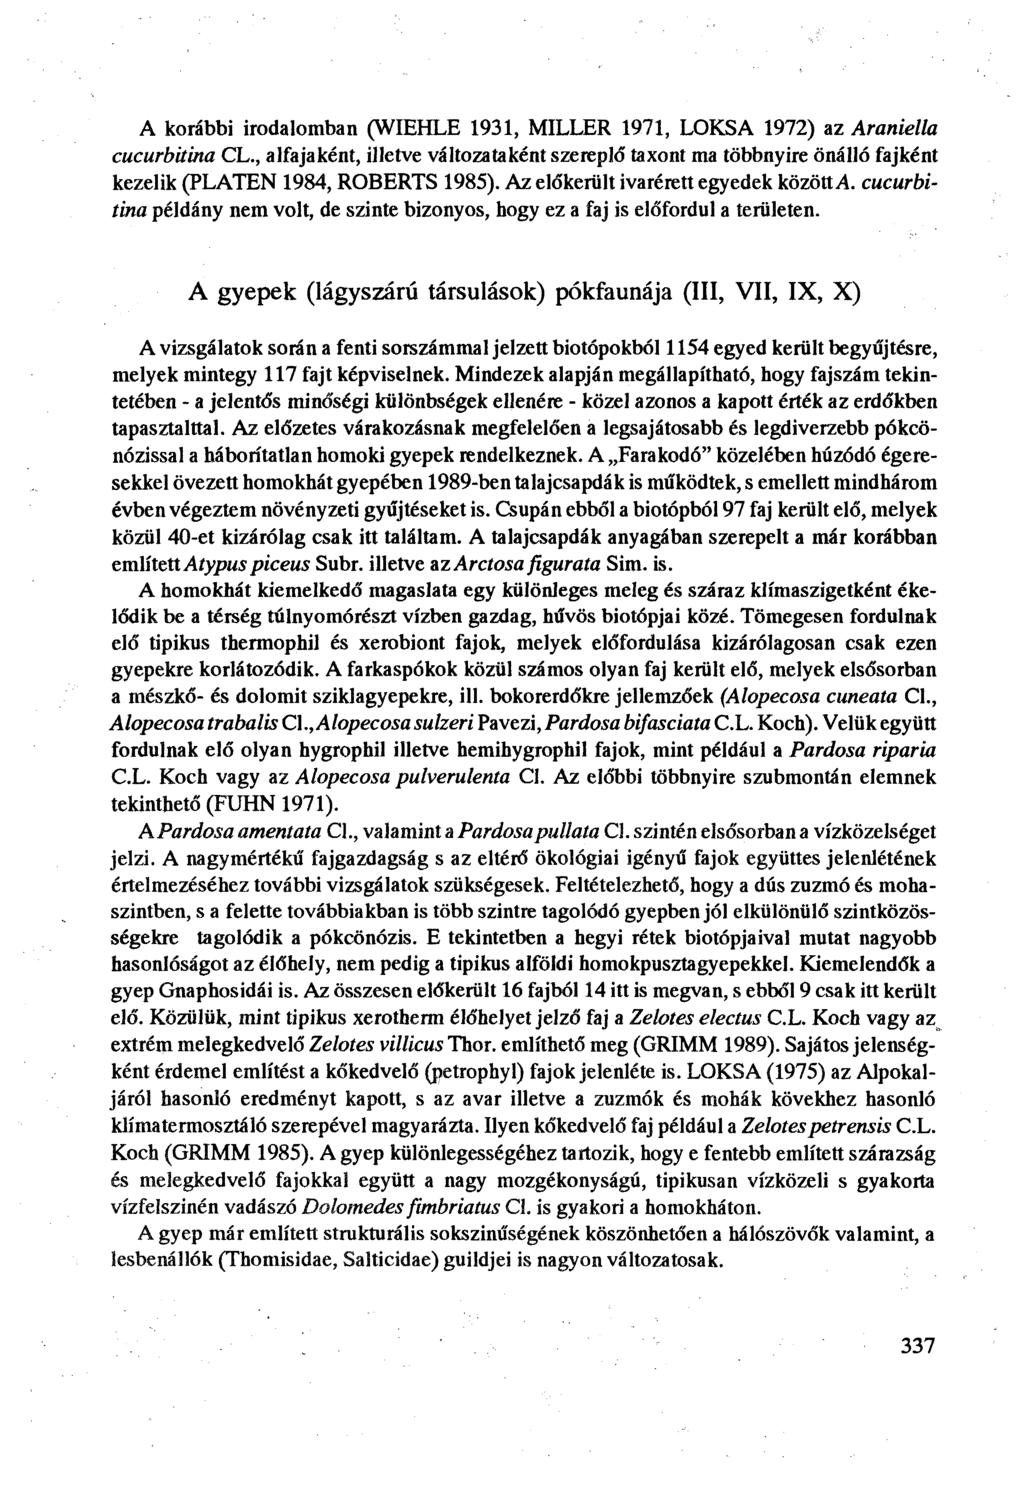 A korábbi irodalomban (WIEHLE 9, MILLER 97, LOKSA 97) az Araniella cucurbitina CL., alfajaként, illetve változataként szereplő taxont ma többnyire önálló fajként kezelik (PLATEN 984, ROBERTS 985).